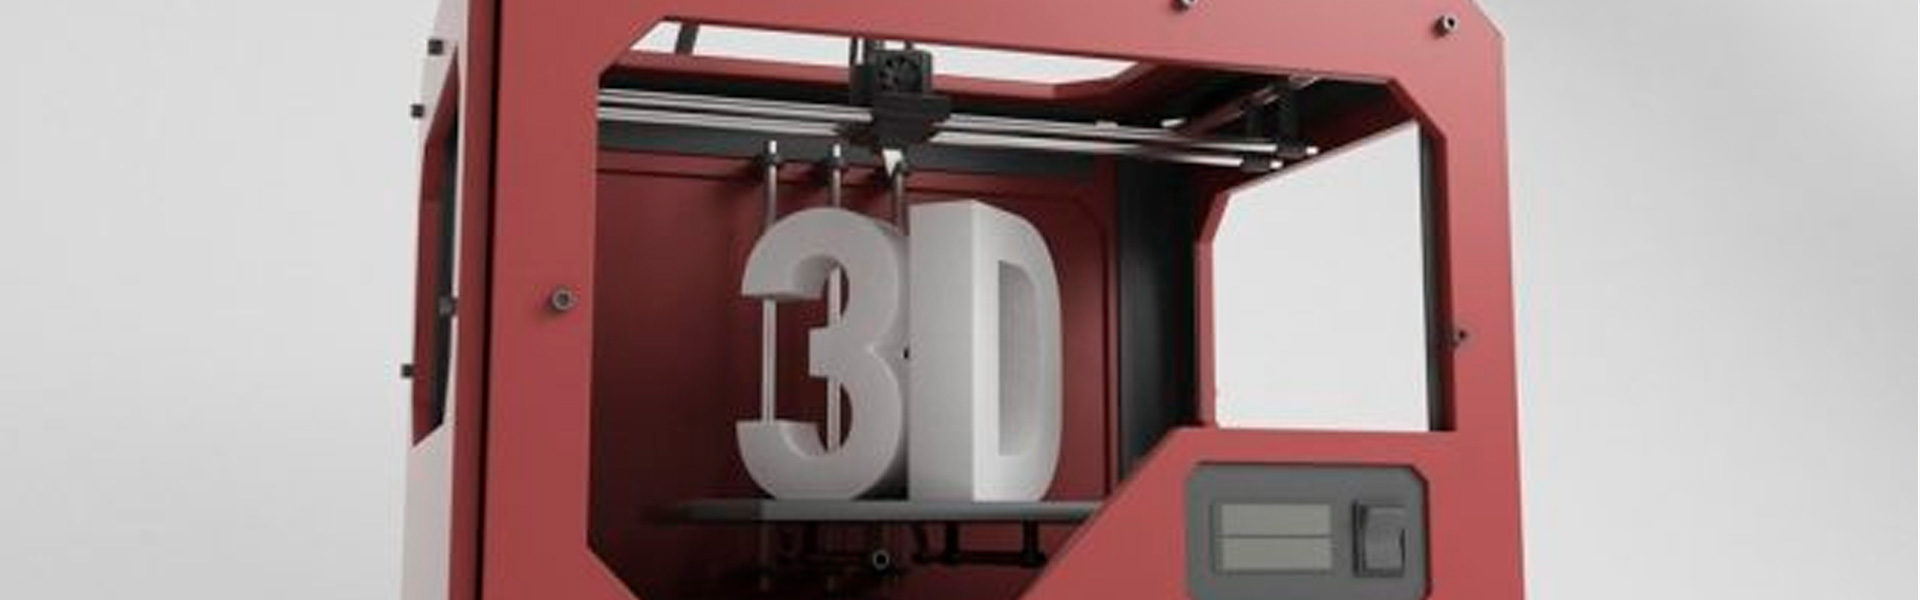 Impressoras 3D Conseguem Reproduzir Pele Humana